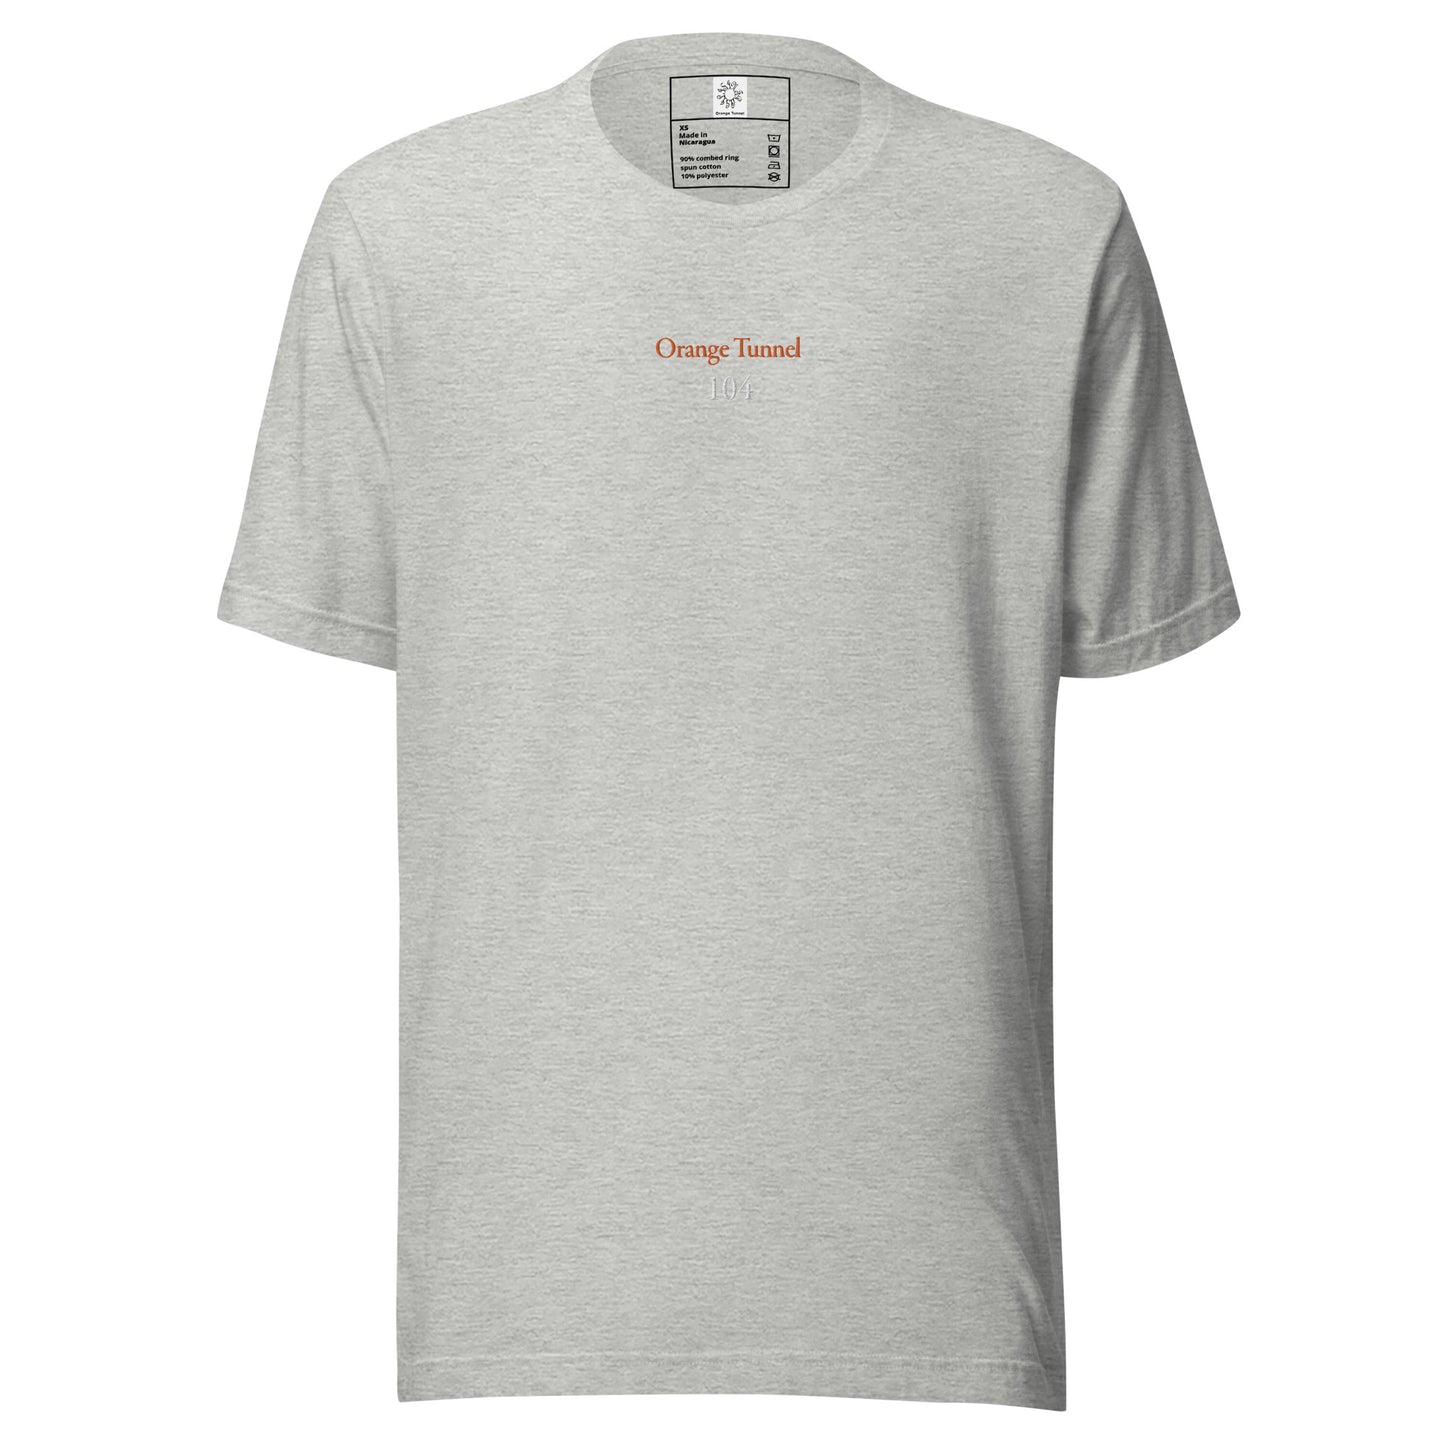 Orange Tunnel 104 Heather Unisex t-shirt